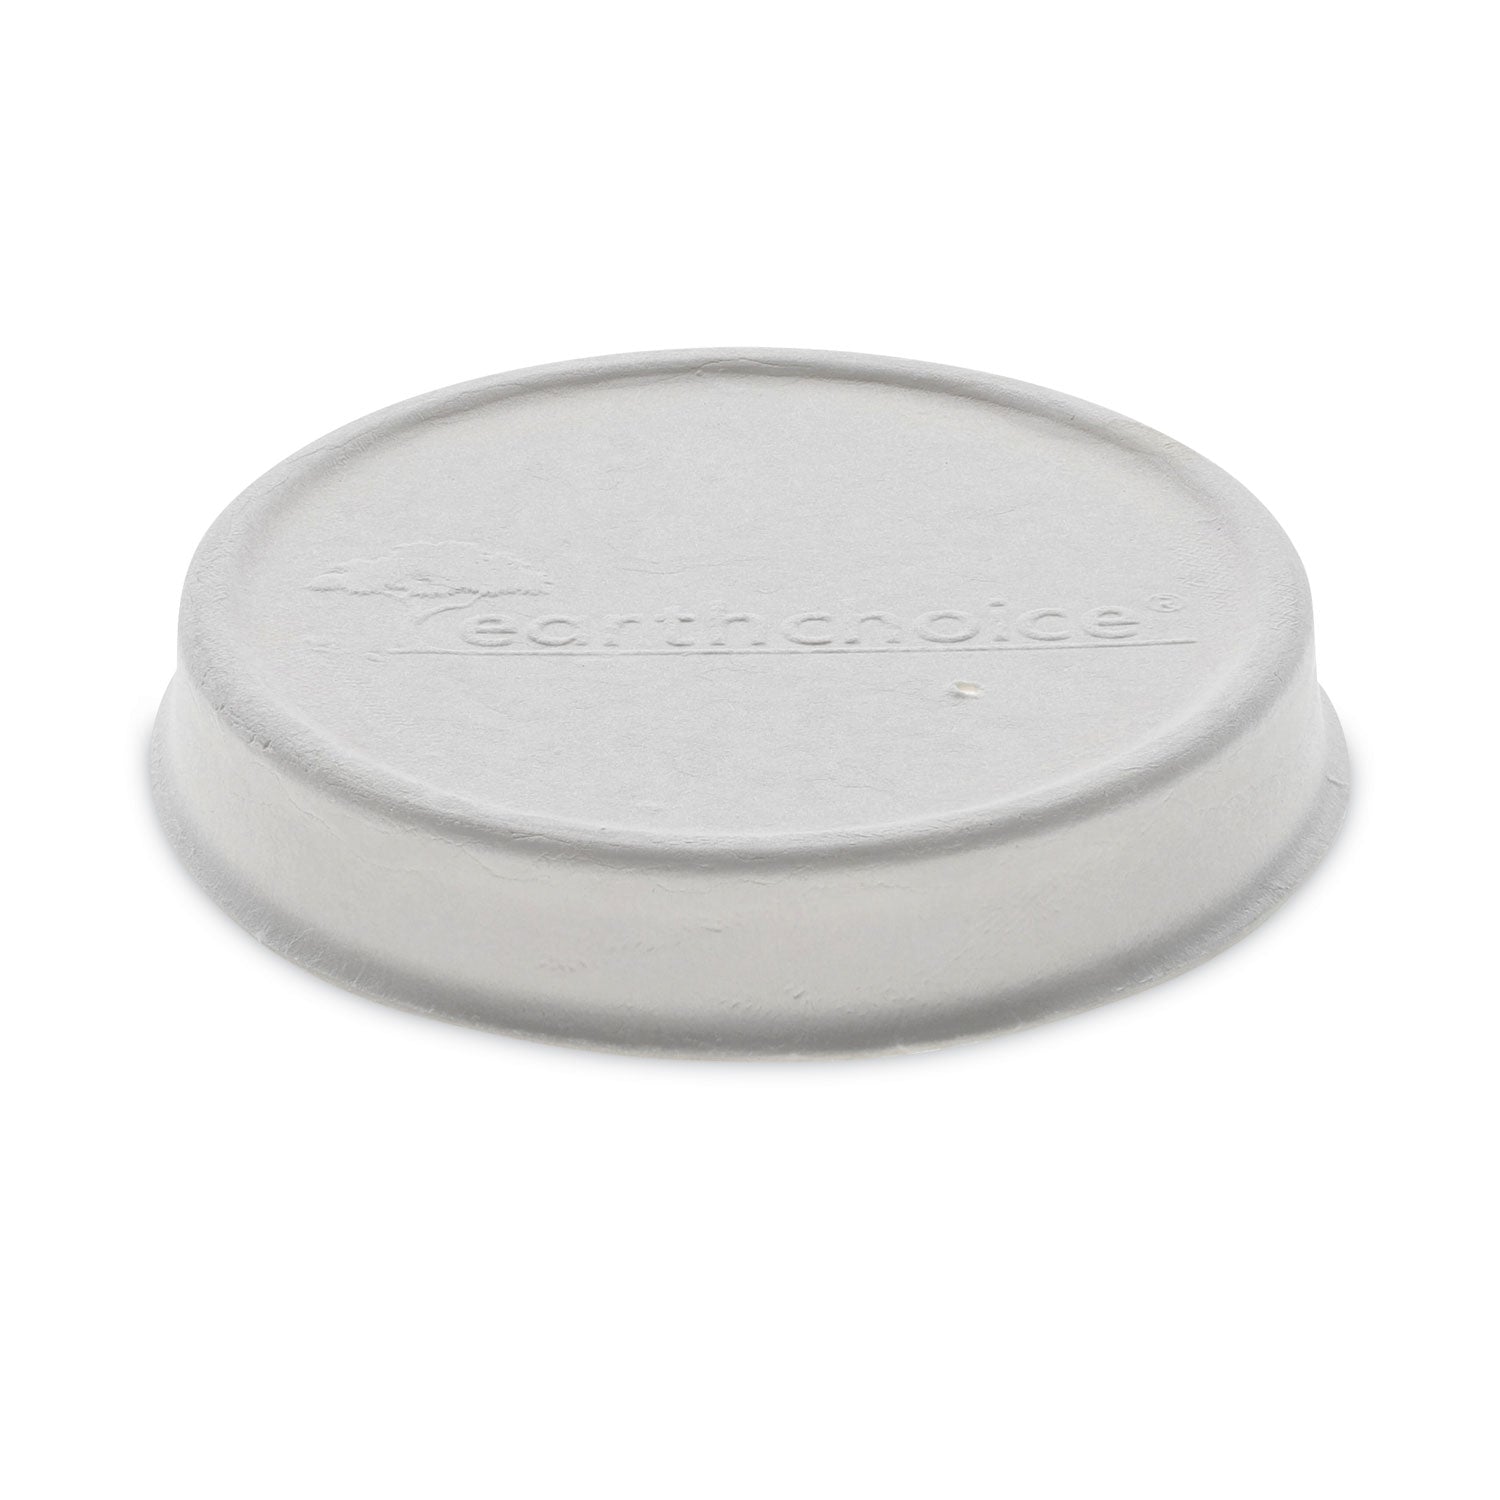 earthchoice-compostable-soup-cup-lid-for-8-16-oz-soup-cups-4-diameter-white-sugarcane-500-carton_pctlmc81216ec - 1